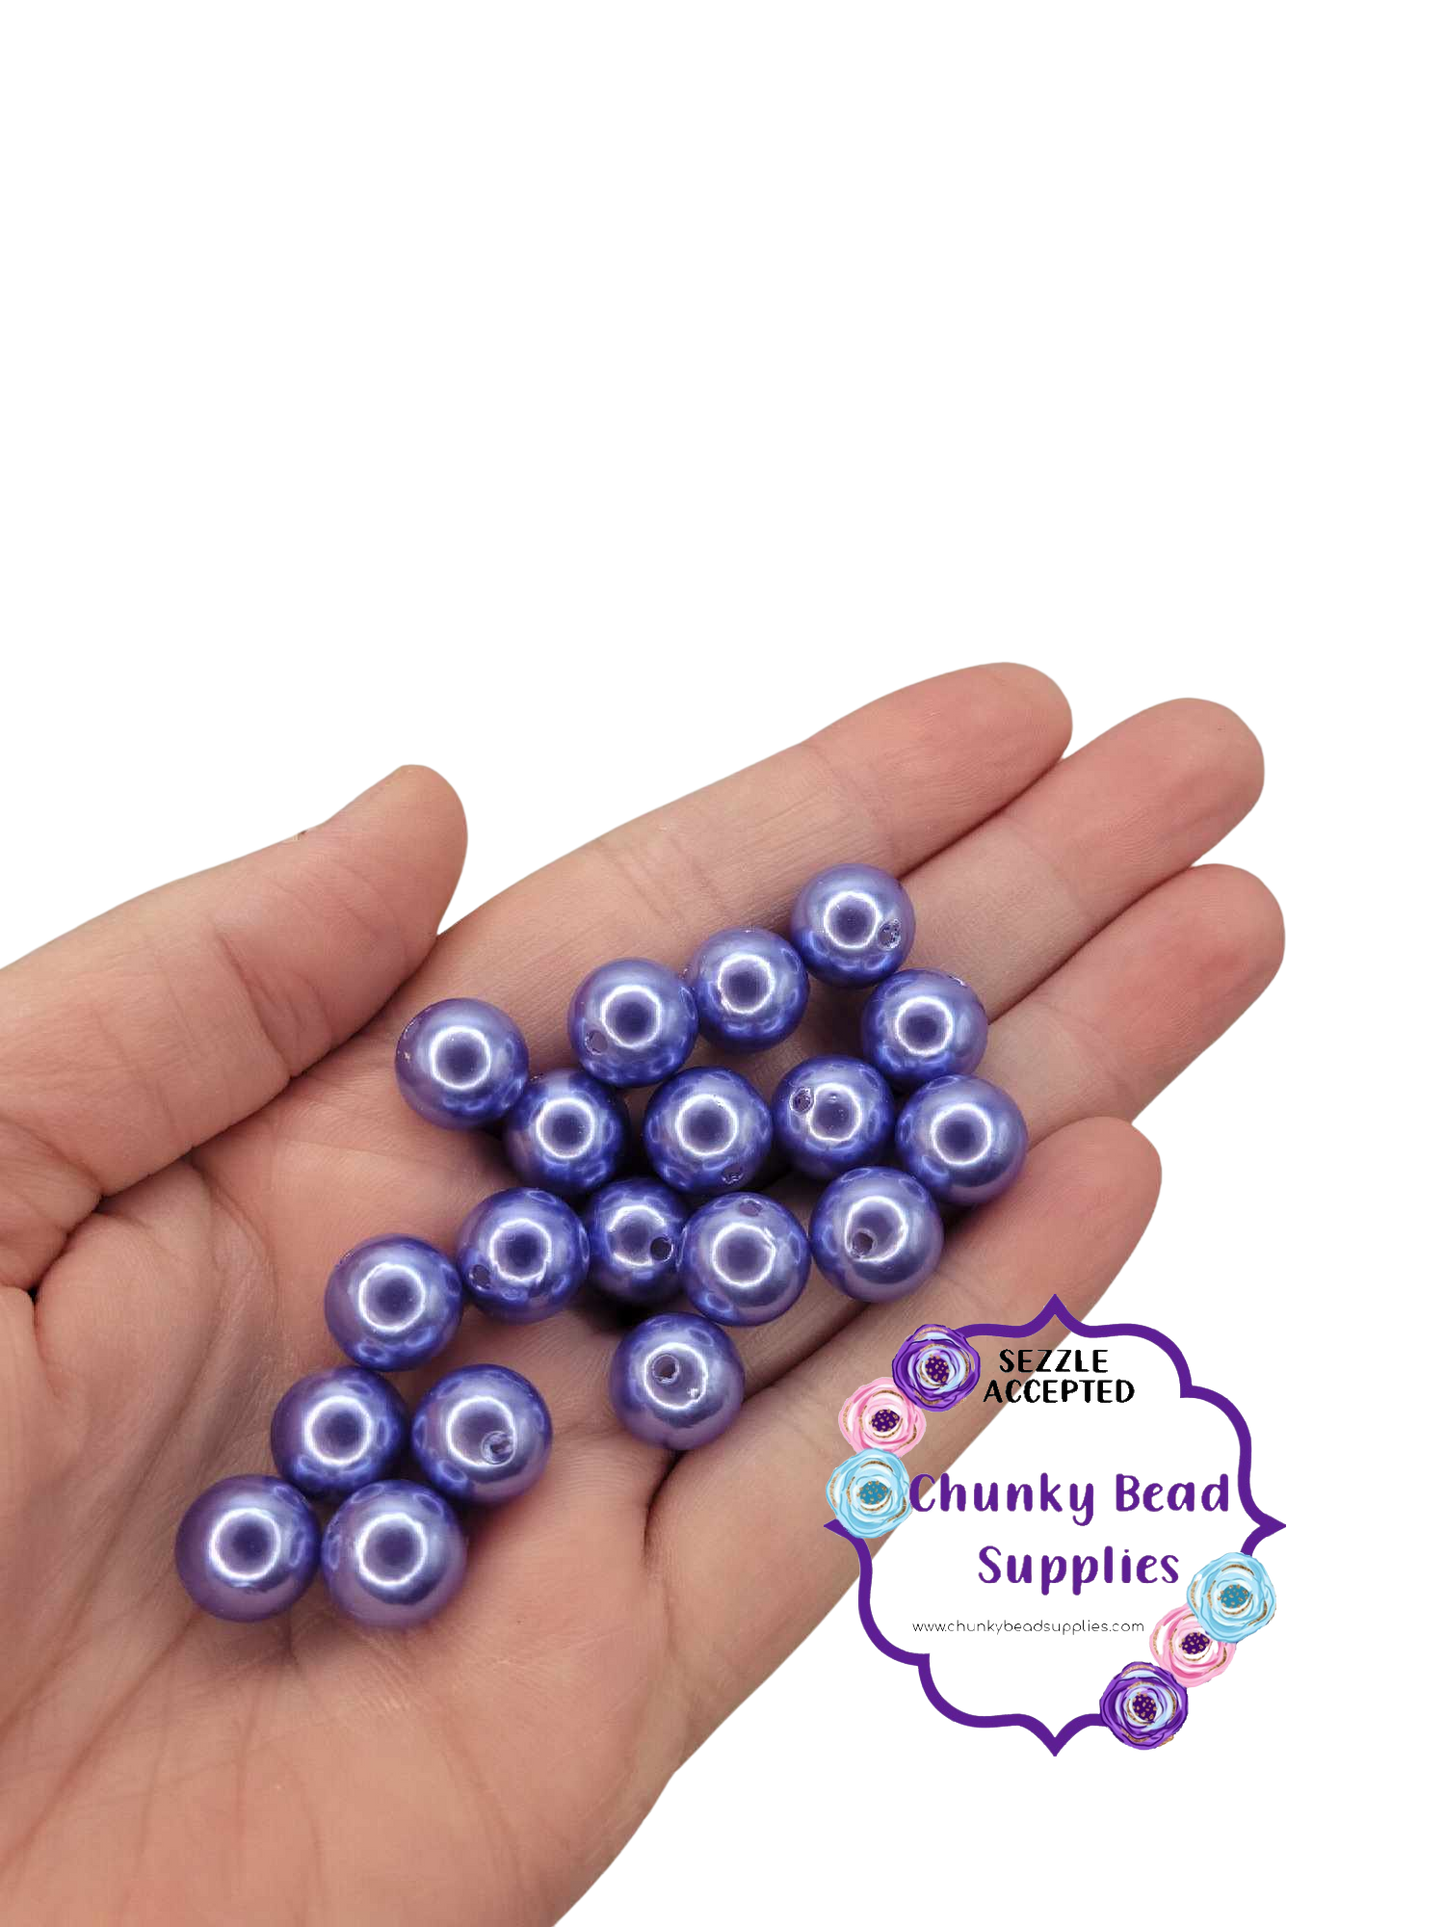 Perles Acryliques "Bleu Violet" 12mm